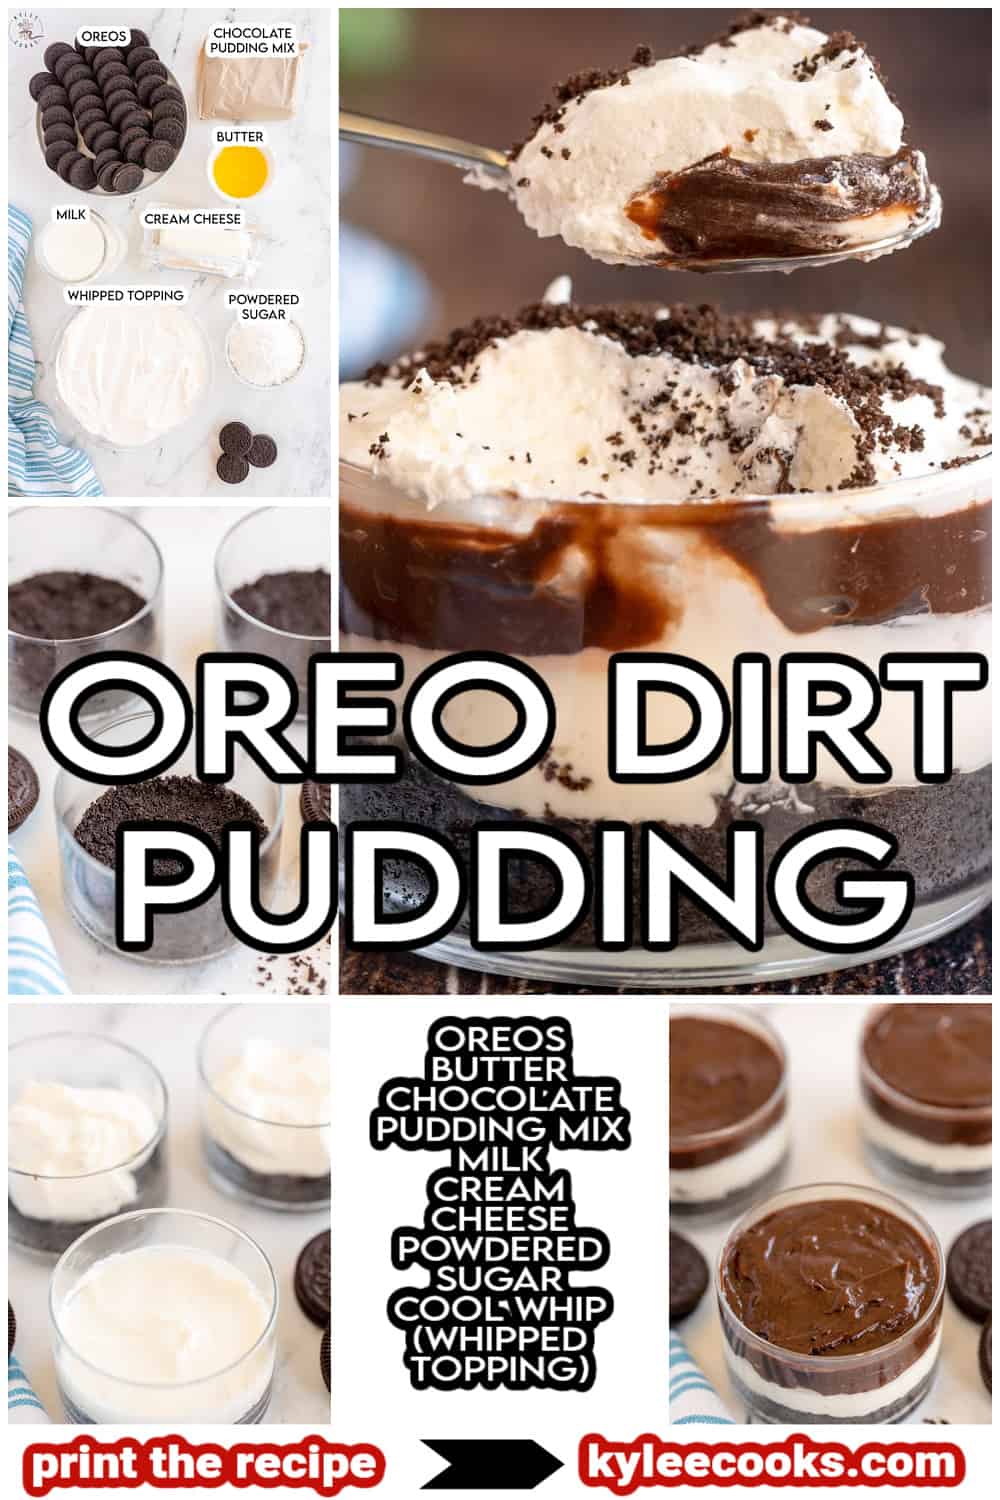 Oreo Dirt pudding dans un verre, avec les ingrédients de la recette et le titre superposés dans le texte.